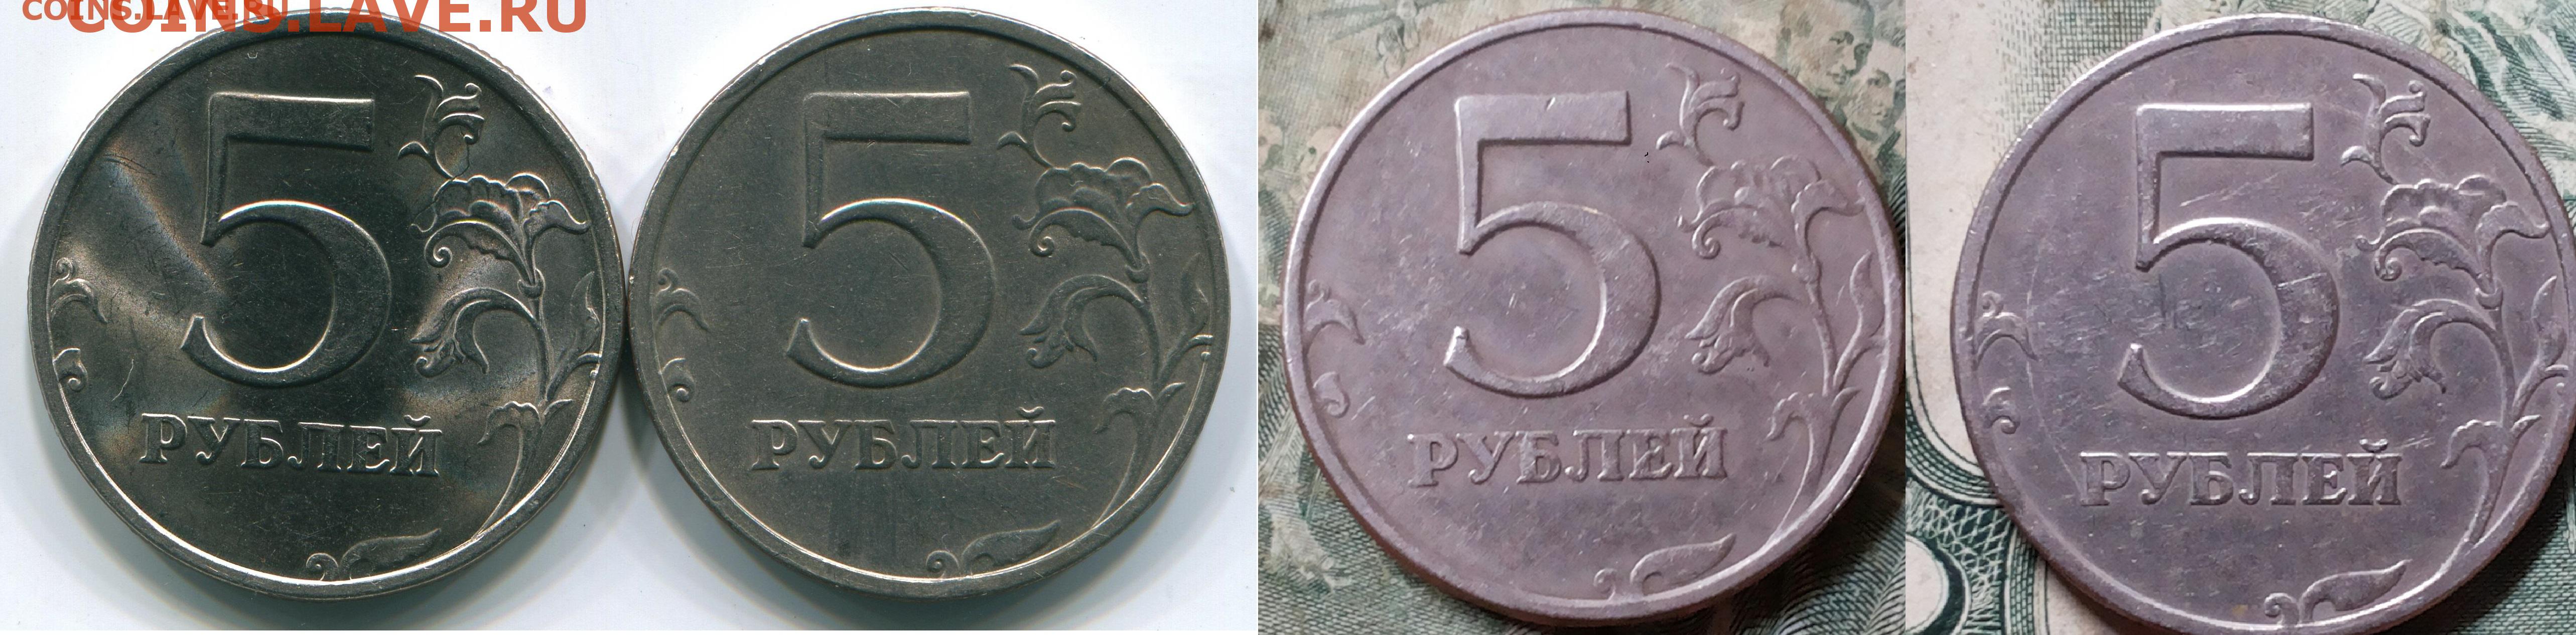 5 рублей с литра. 5 Рублей 1997 СПМД 2.3. 5 Рублей 1997 СПМД шт 2.3. 5 Рублей 1997 г. СПМД - шт. 2.23 Увеличенное изображение реверса. 5 Рублей 2 штуки.